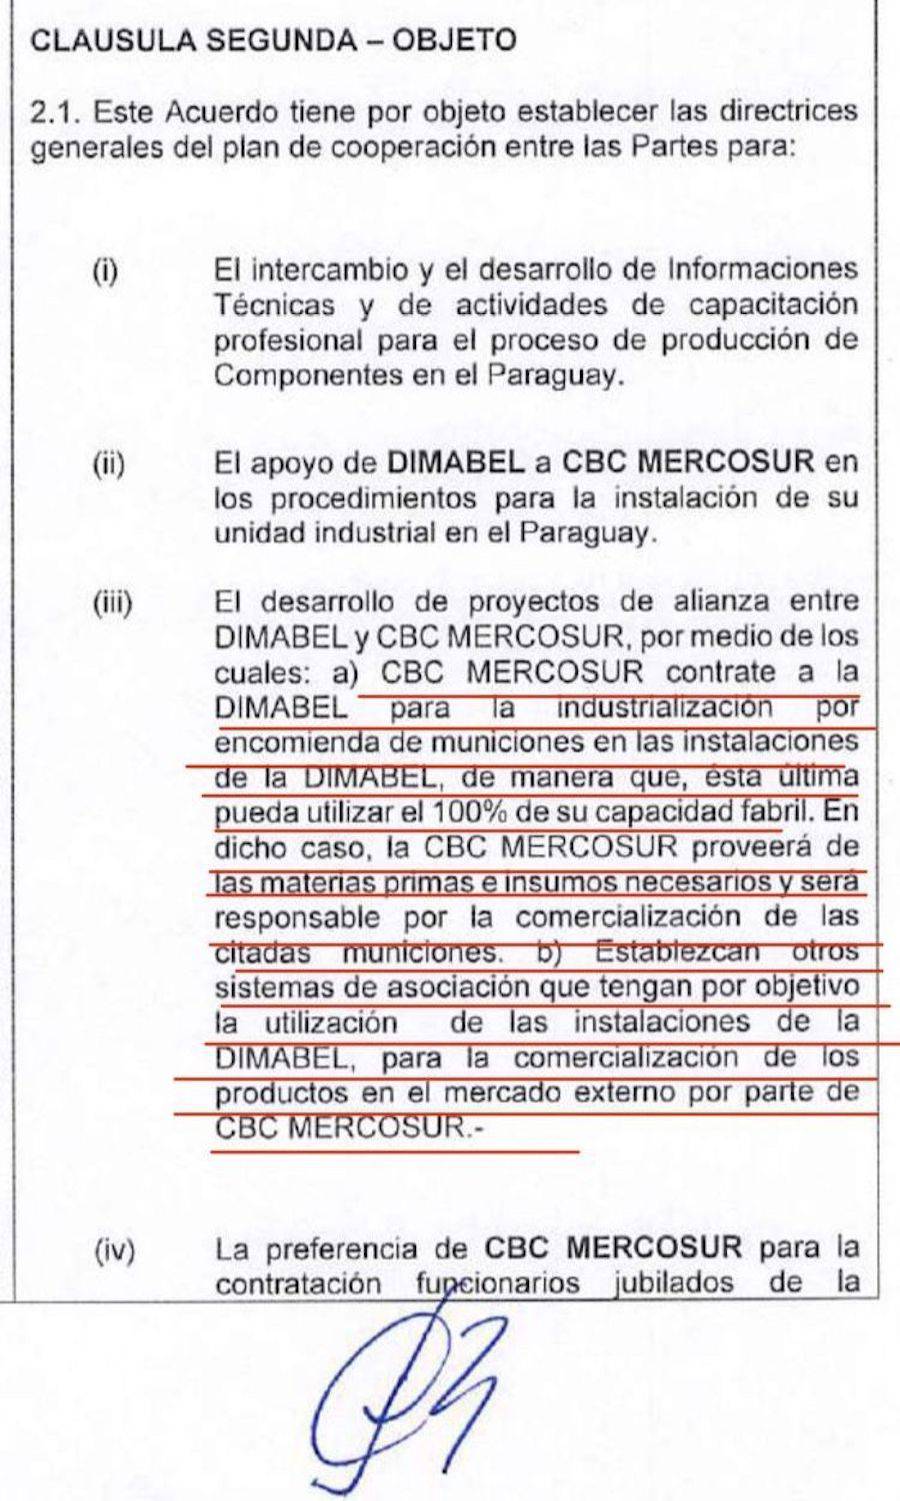 Empresa brasileña pretende instalar una fábrica de municiones en Paraguay a través de la maquila, necesita aprobación de Dimabel, pero el Gobierno “aprieta” para sacarle beneficios a la empresa privada y le hacen firmar un acuerdo previo de entendimiento.